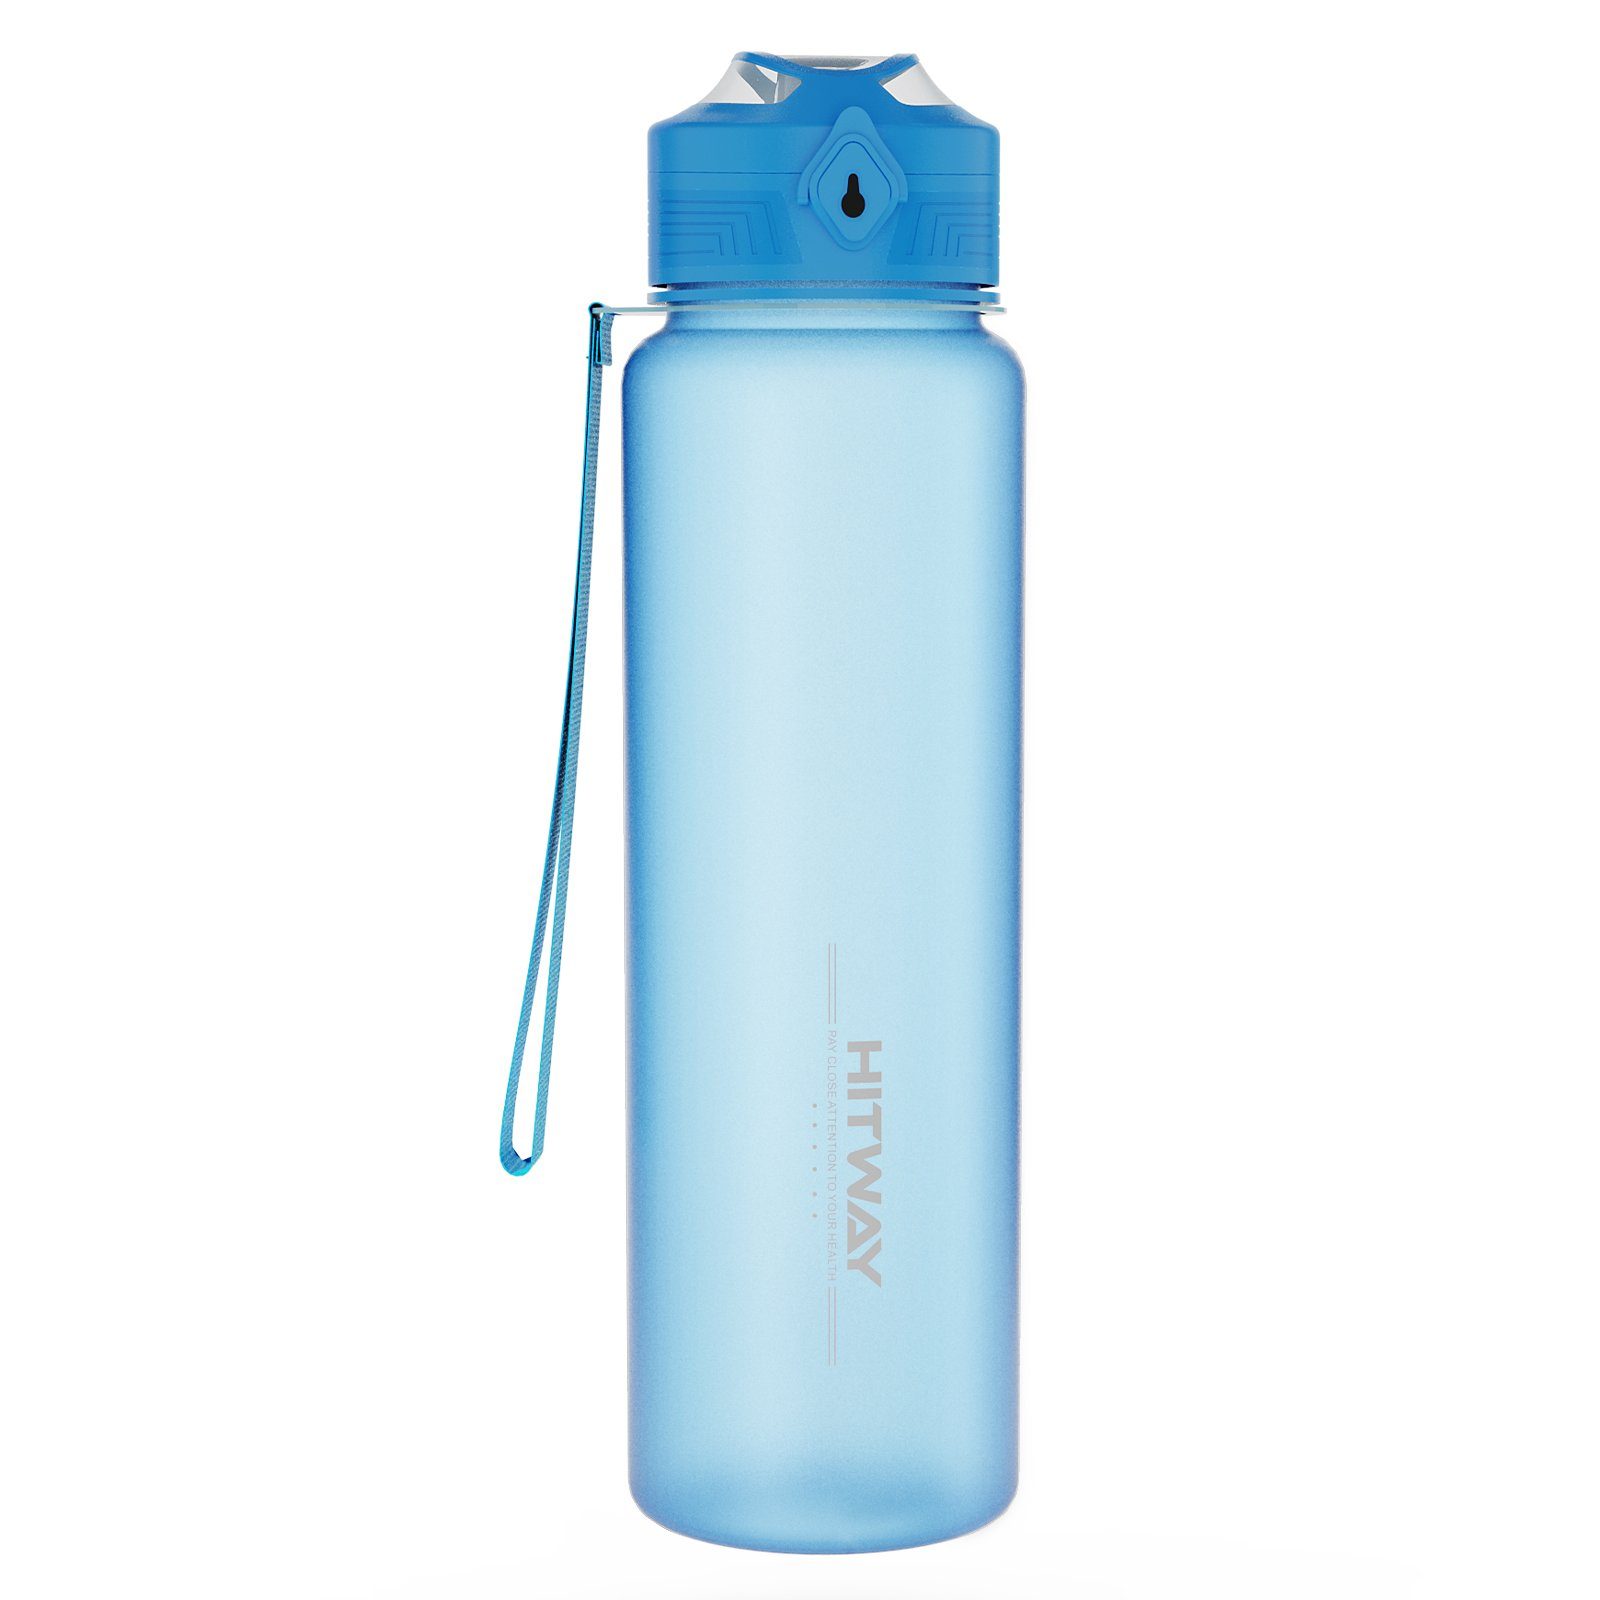 HITWAY hellblau Trinkflasche 1l - Auslaufsicher BPA-Frei - Trinkflasche Wasserflasche HITWAY